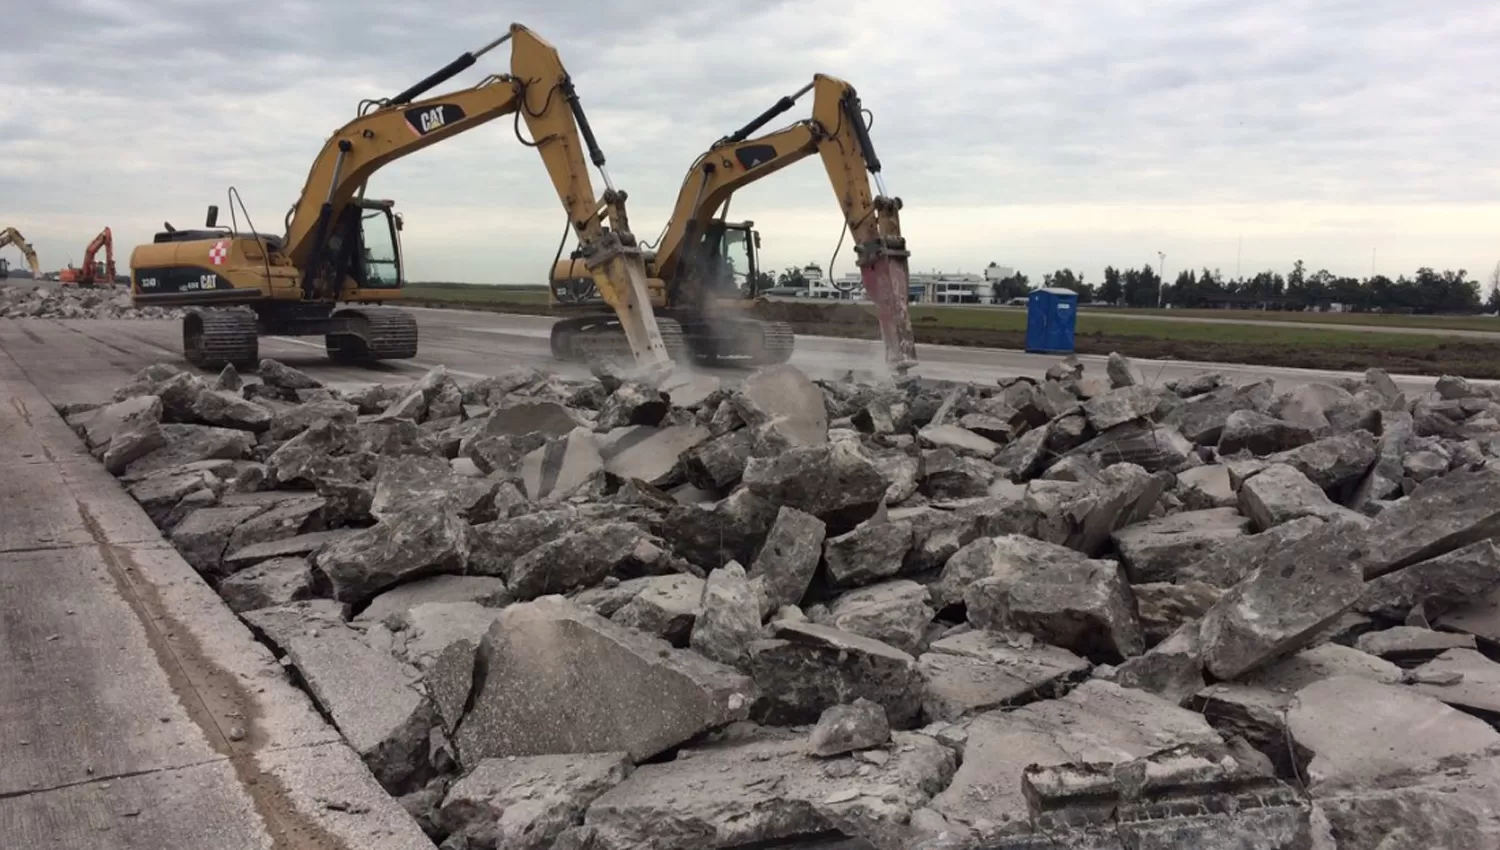 EN MARCHA. Los martillos neumáticos levantan el grueso concreto, que será reemplazado por otra capa más acorde a las necesidades del nuevo aeropuerto de Tucumán. FOTO TOMADA DE TWITTER.COM//FLAP152